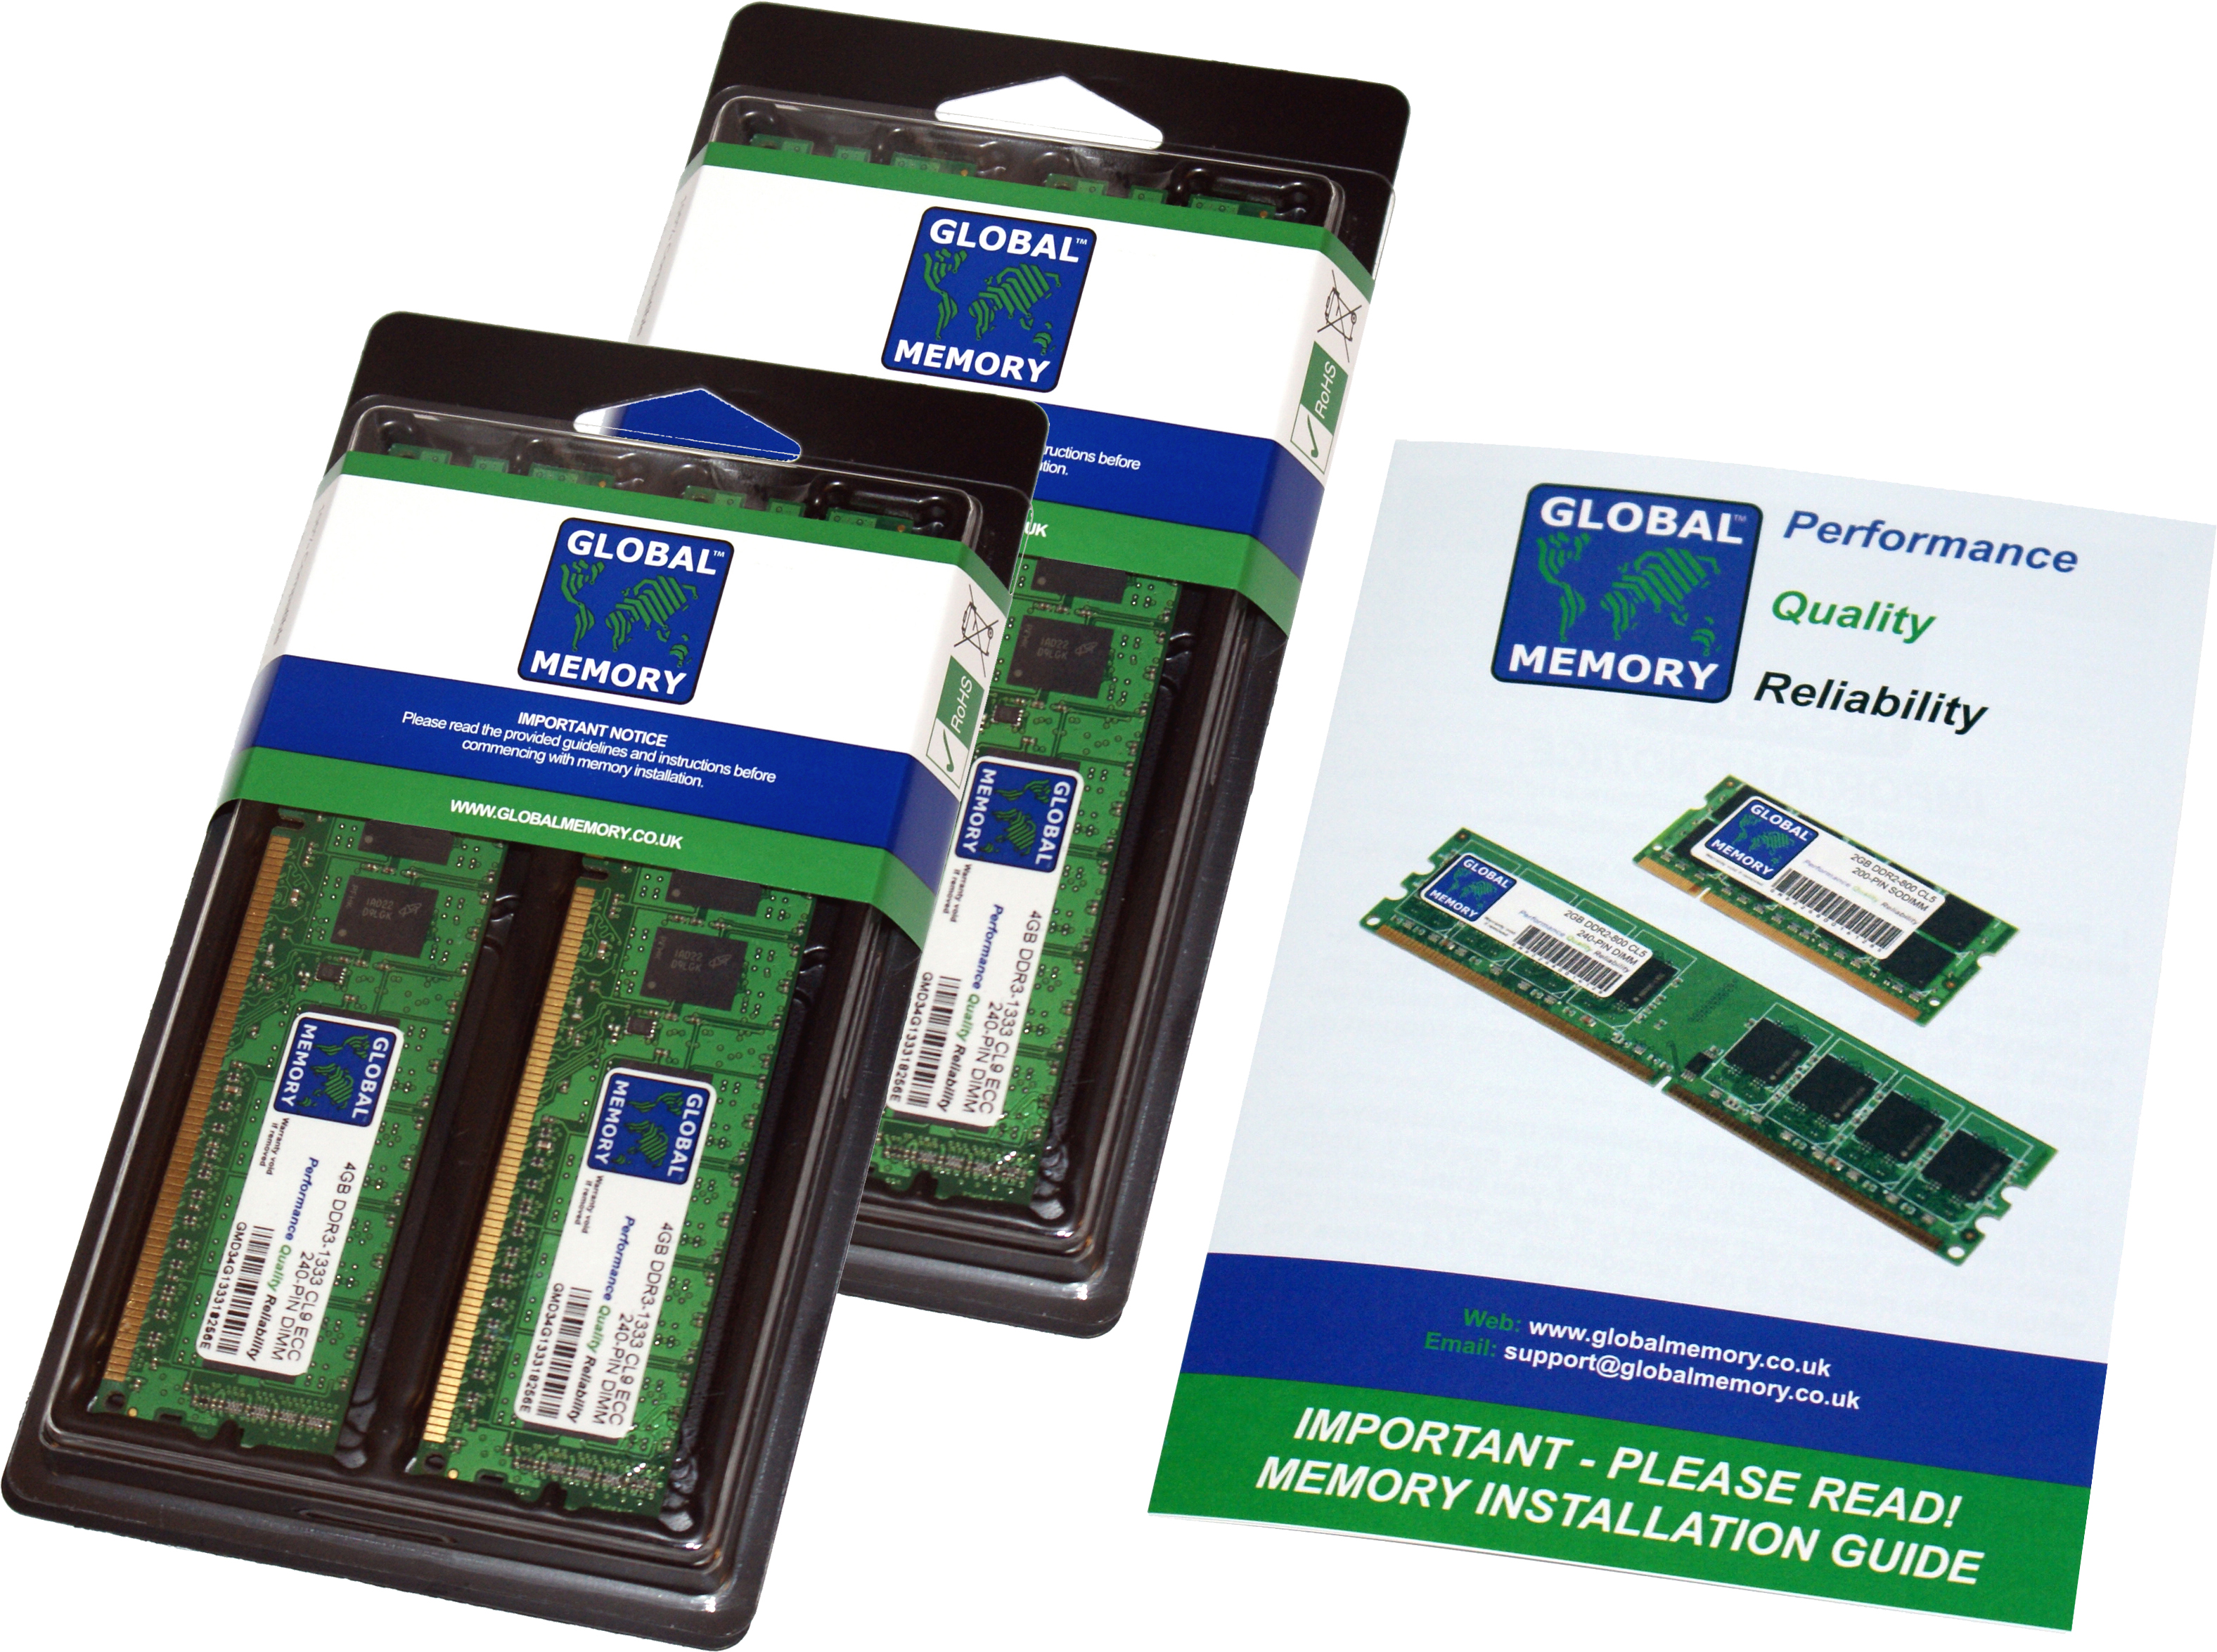 16GB (4 x 4GB) DDR4 2133MHz PC4-17000 288-PIN DIMM MEMORY RAM KIT FOR HEWLETT-PACKARD PC DESKTOPS